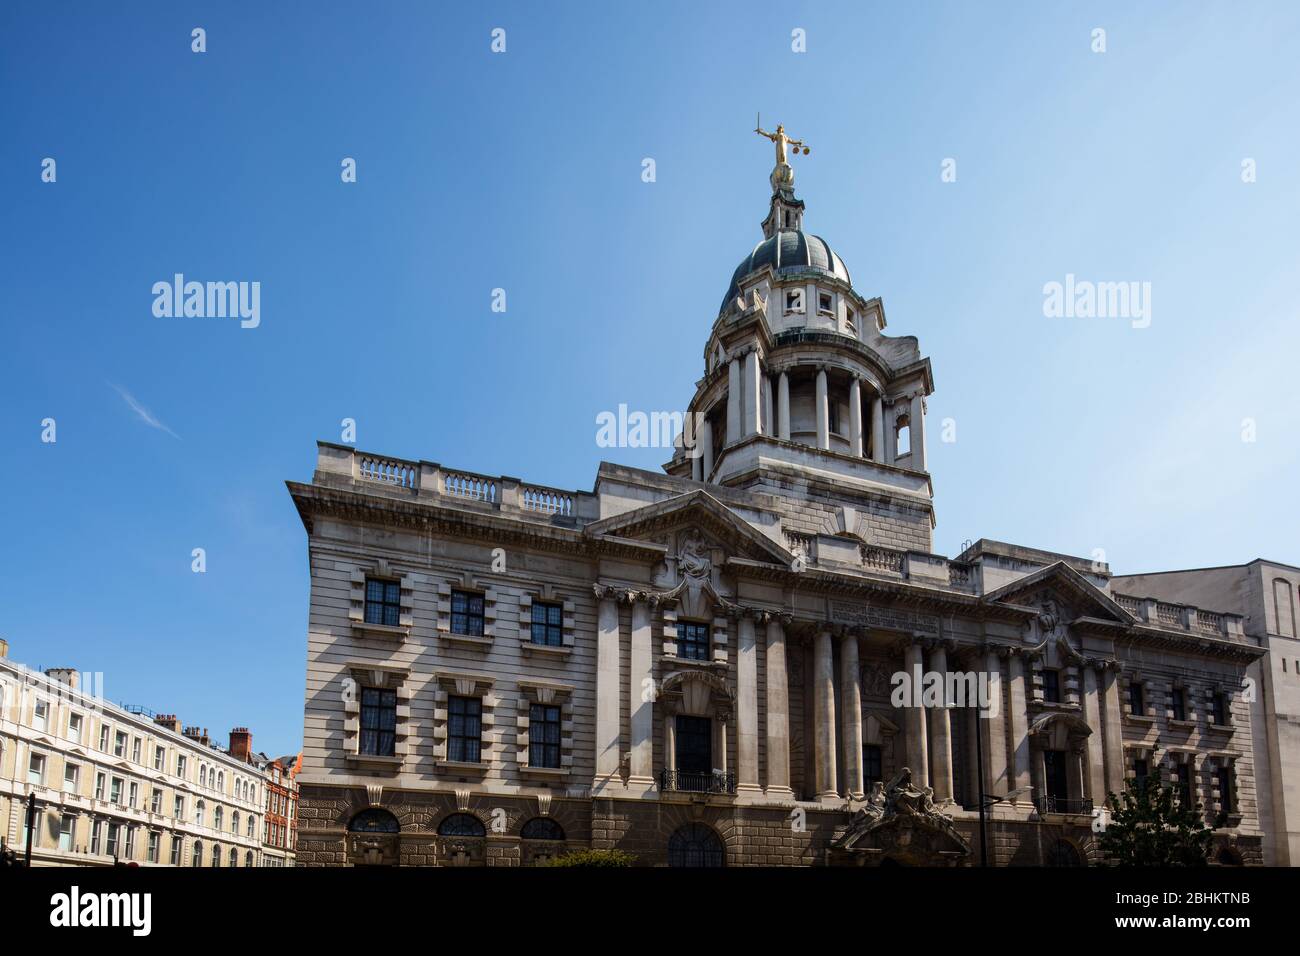 Old Bailey, GV General View, im Sommer gesehen Sonnenlicht, London, England, Großbritannien Stockfoto